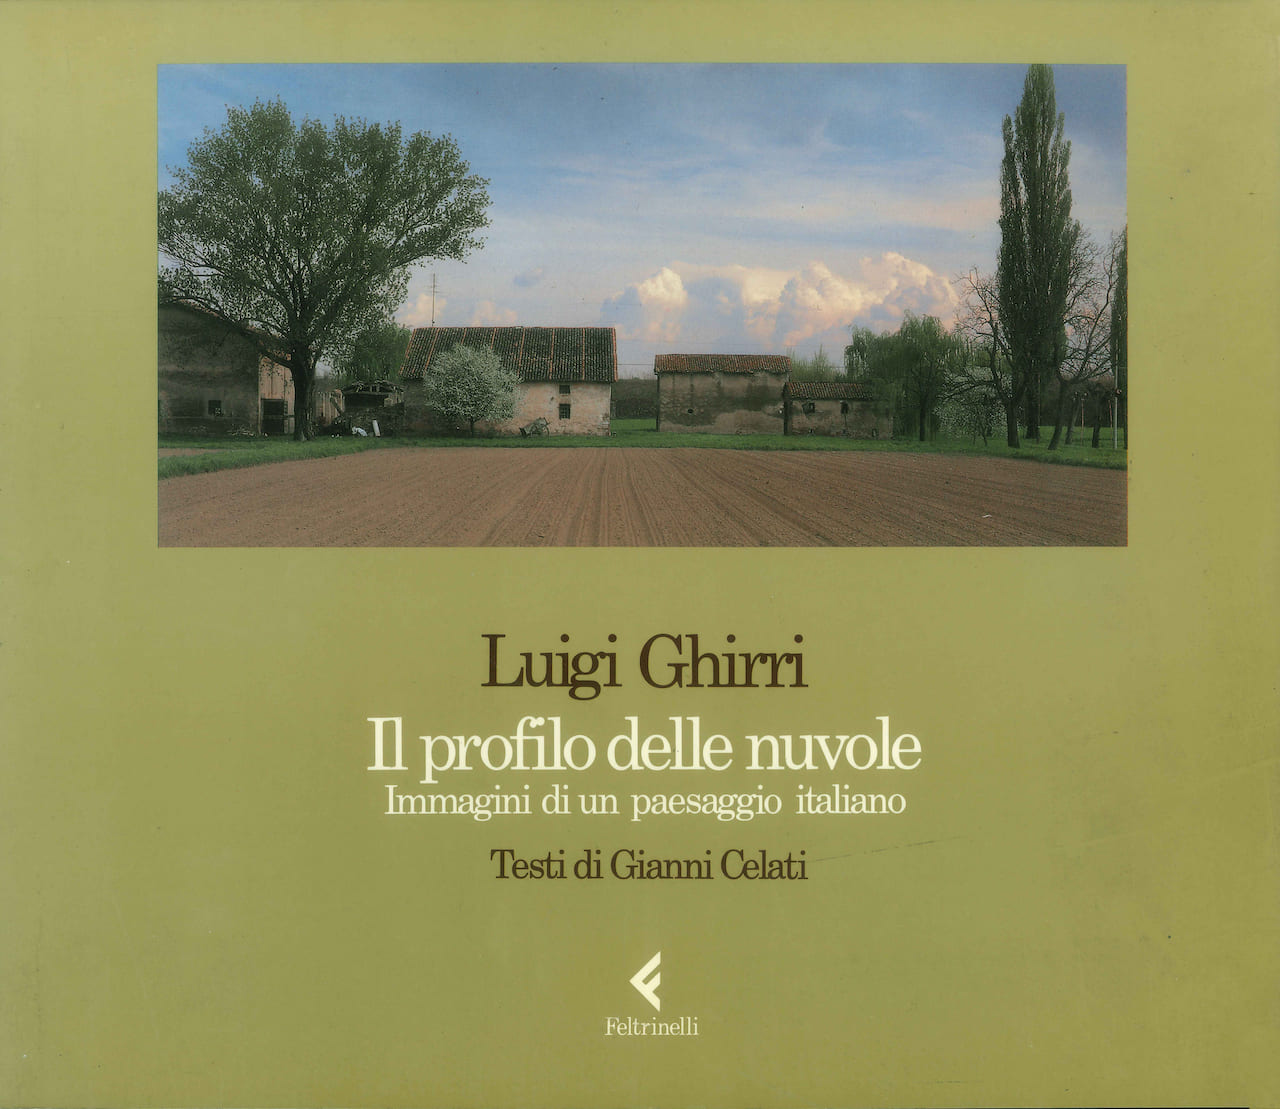 Luigi Ghirri, Il profilo delle nuvole, 1989